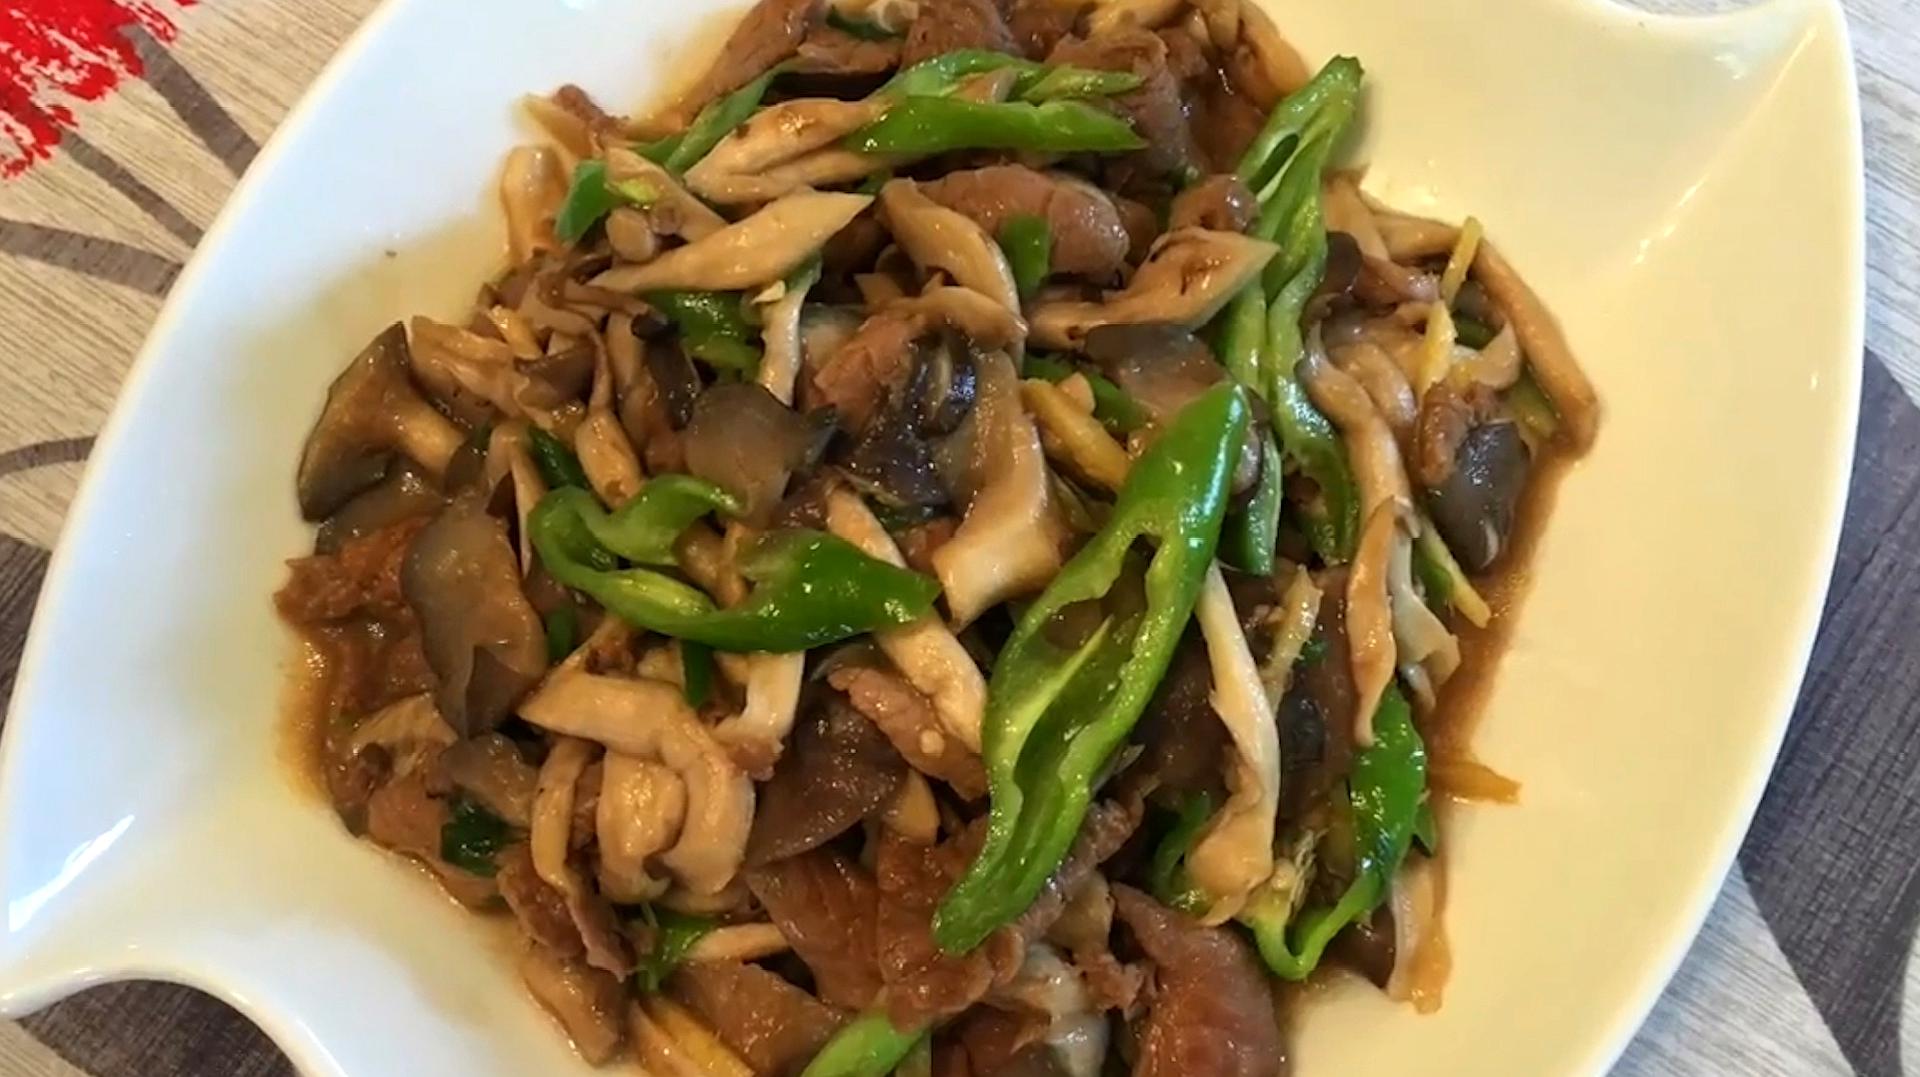 蘑菇炒肉片,做法简单,味道好的家常菜